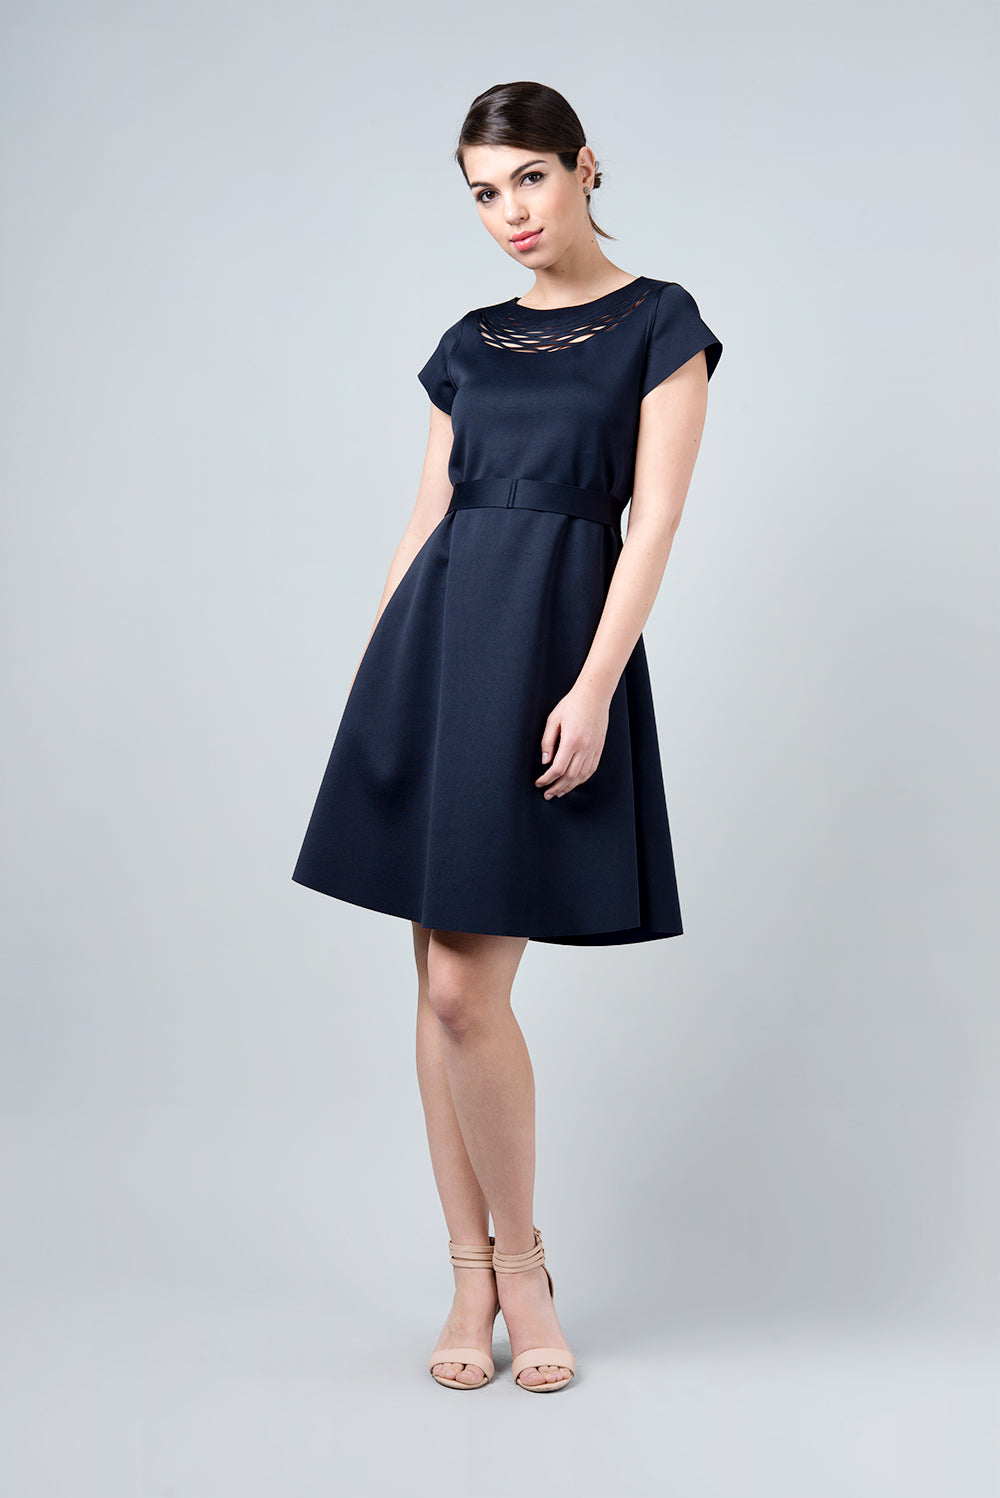 Double sided blue and navy dress - Omega I/O dress